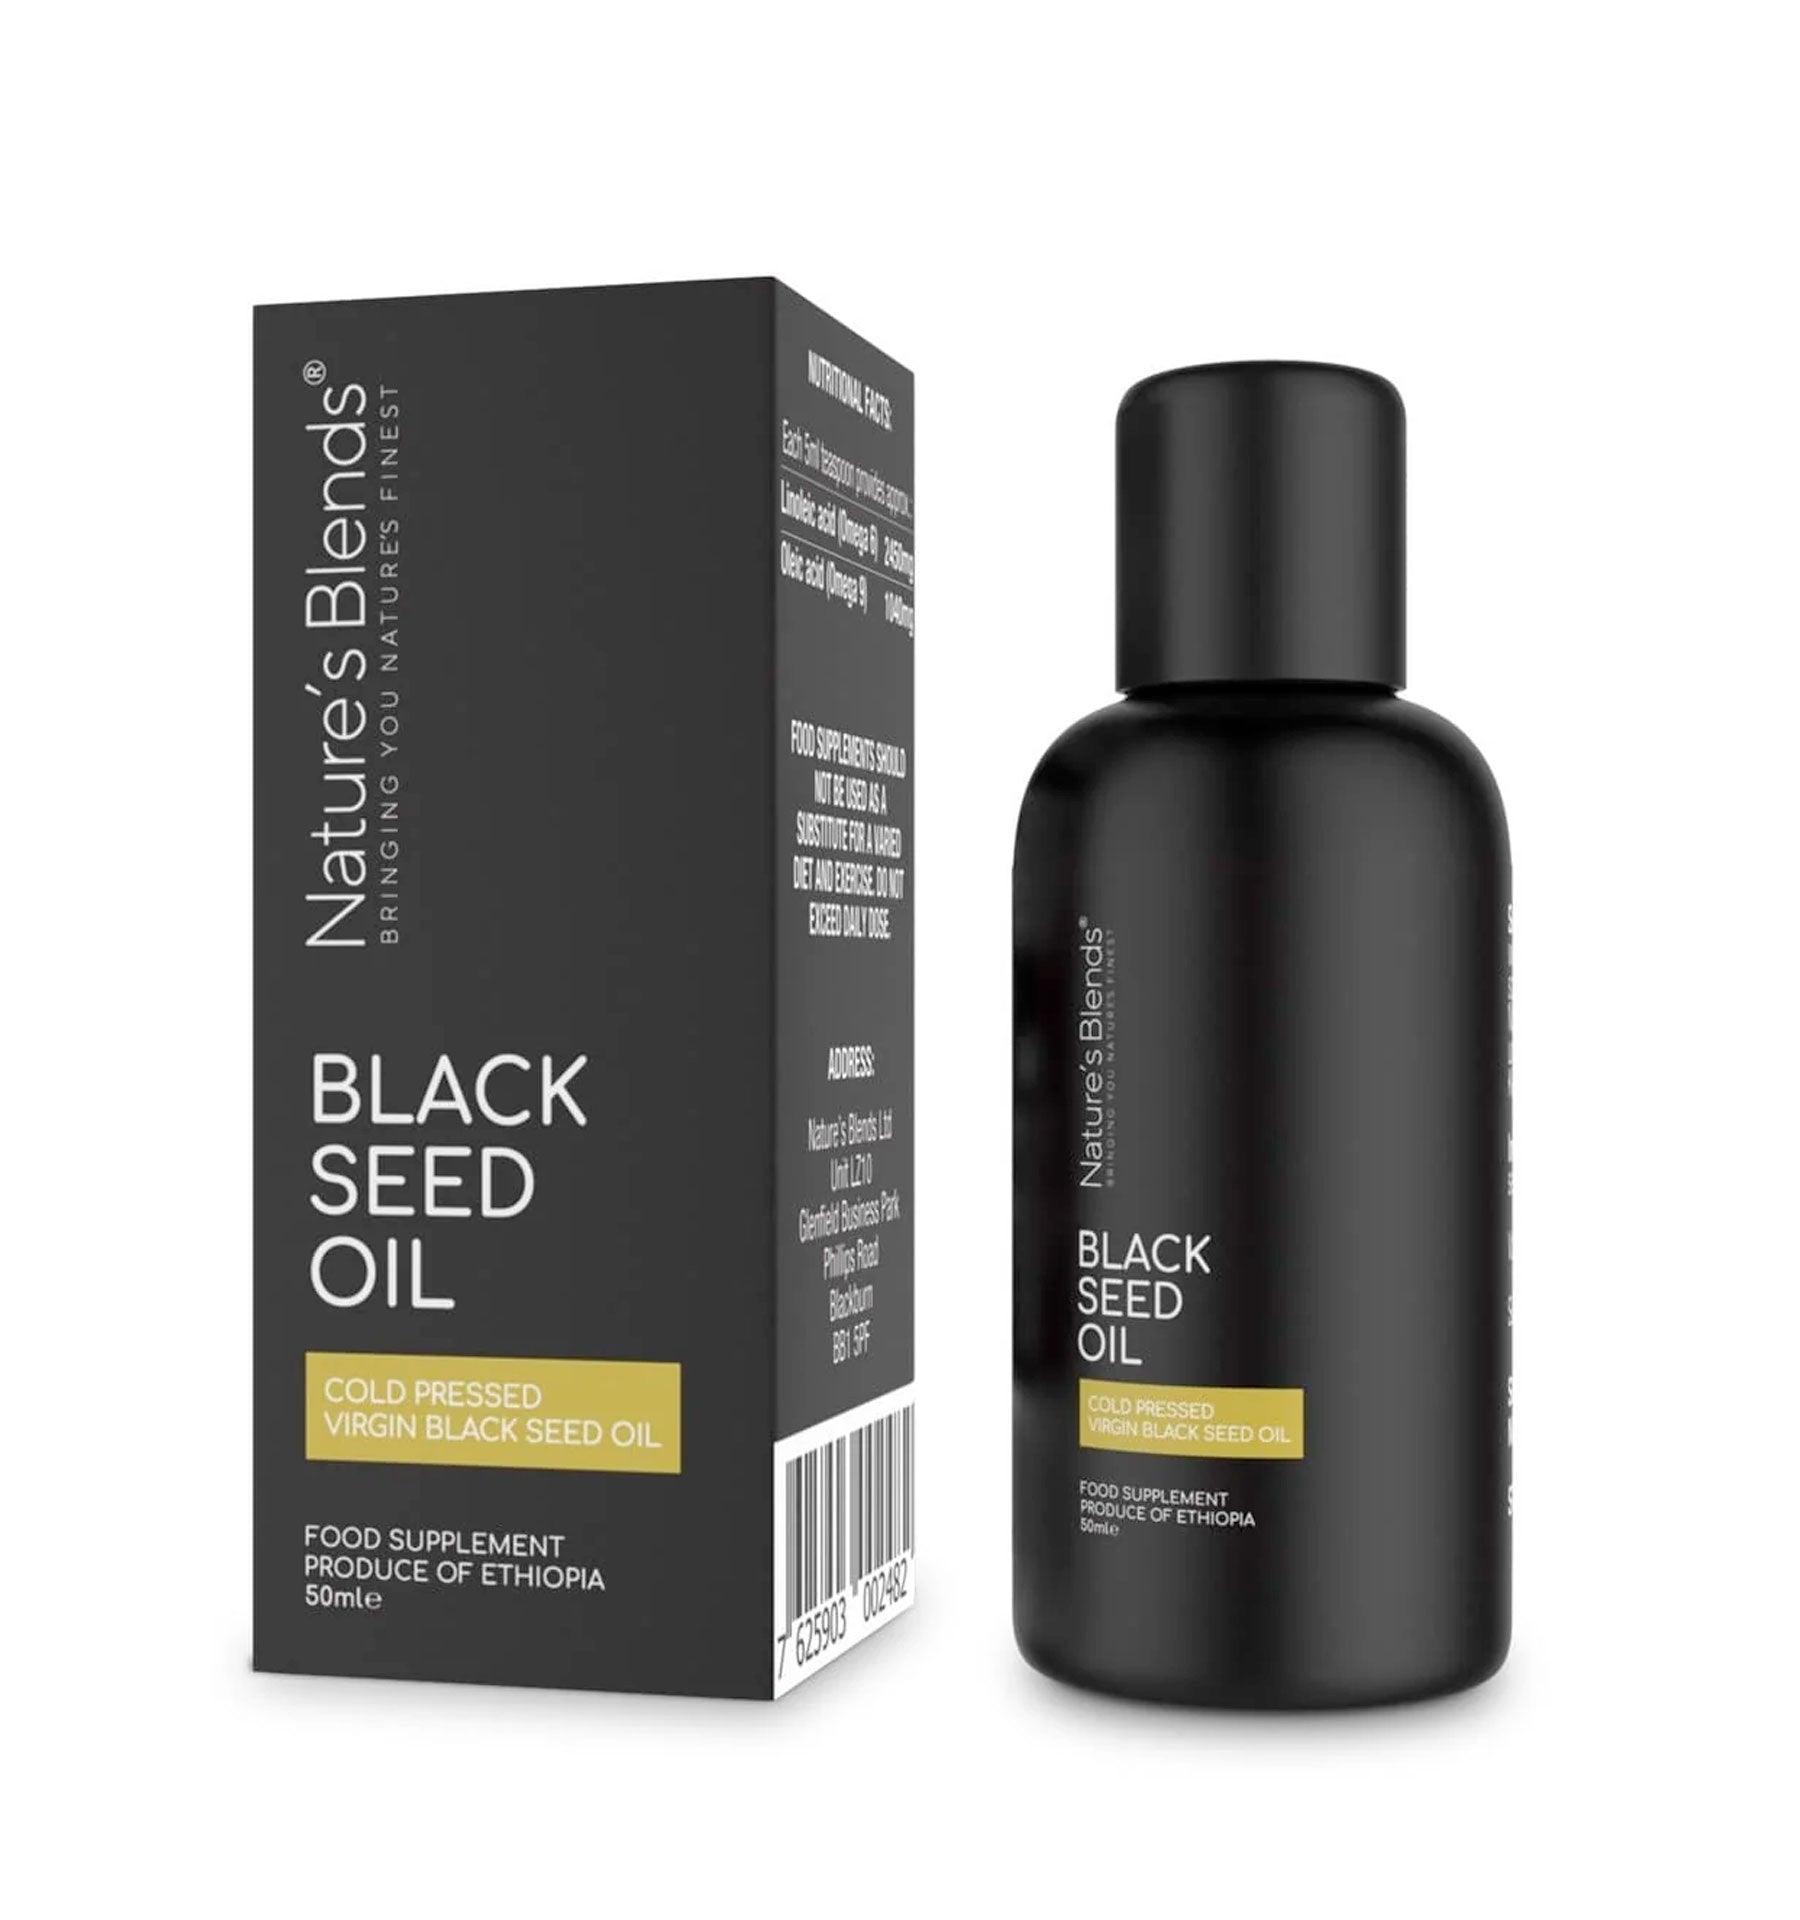 Raw Virgin Ethiopian Black Seed Oil (50ml) 2.5% TQ - Islamic Pixels